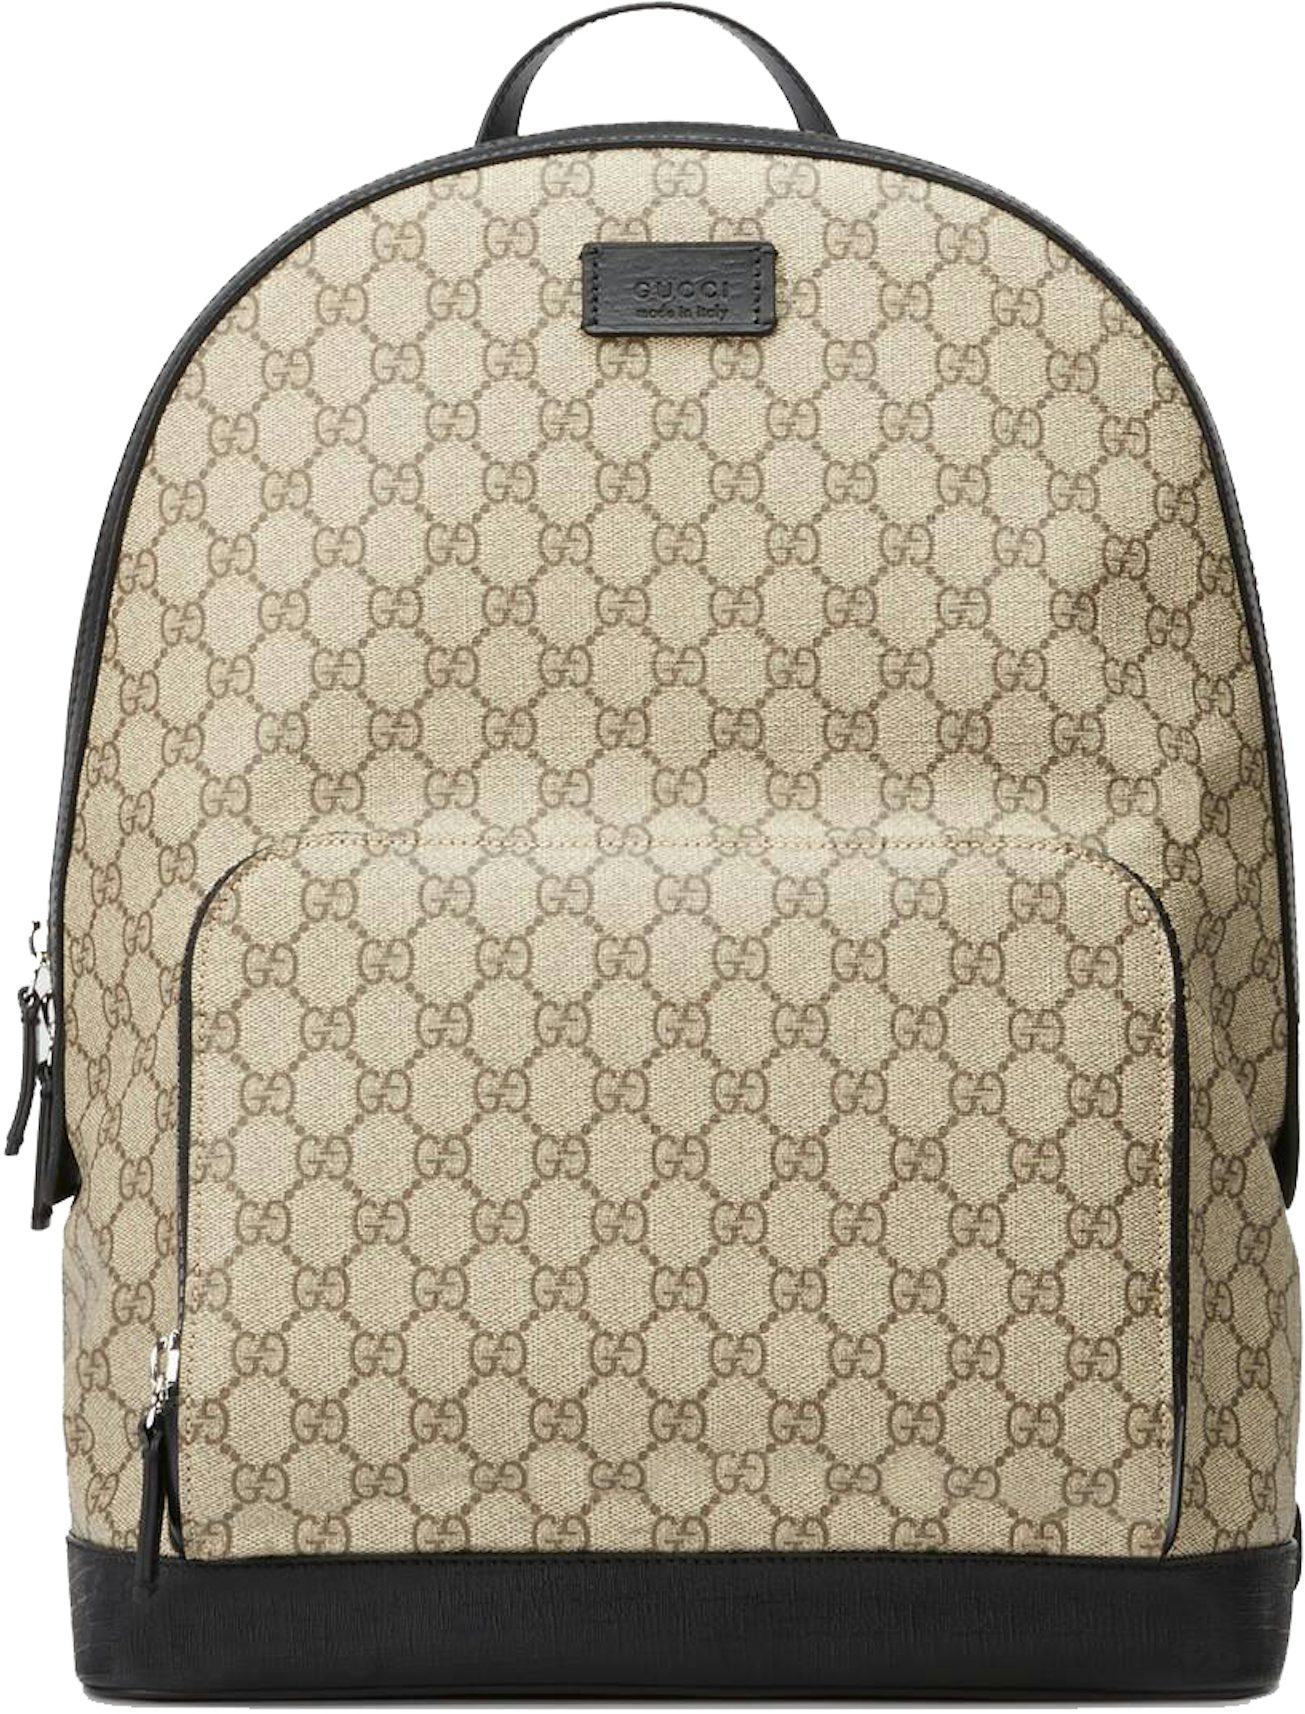 Gucci GG Supreme Backpack Front Zipper Pocket Beige/Black - US